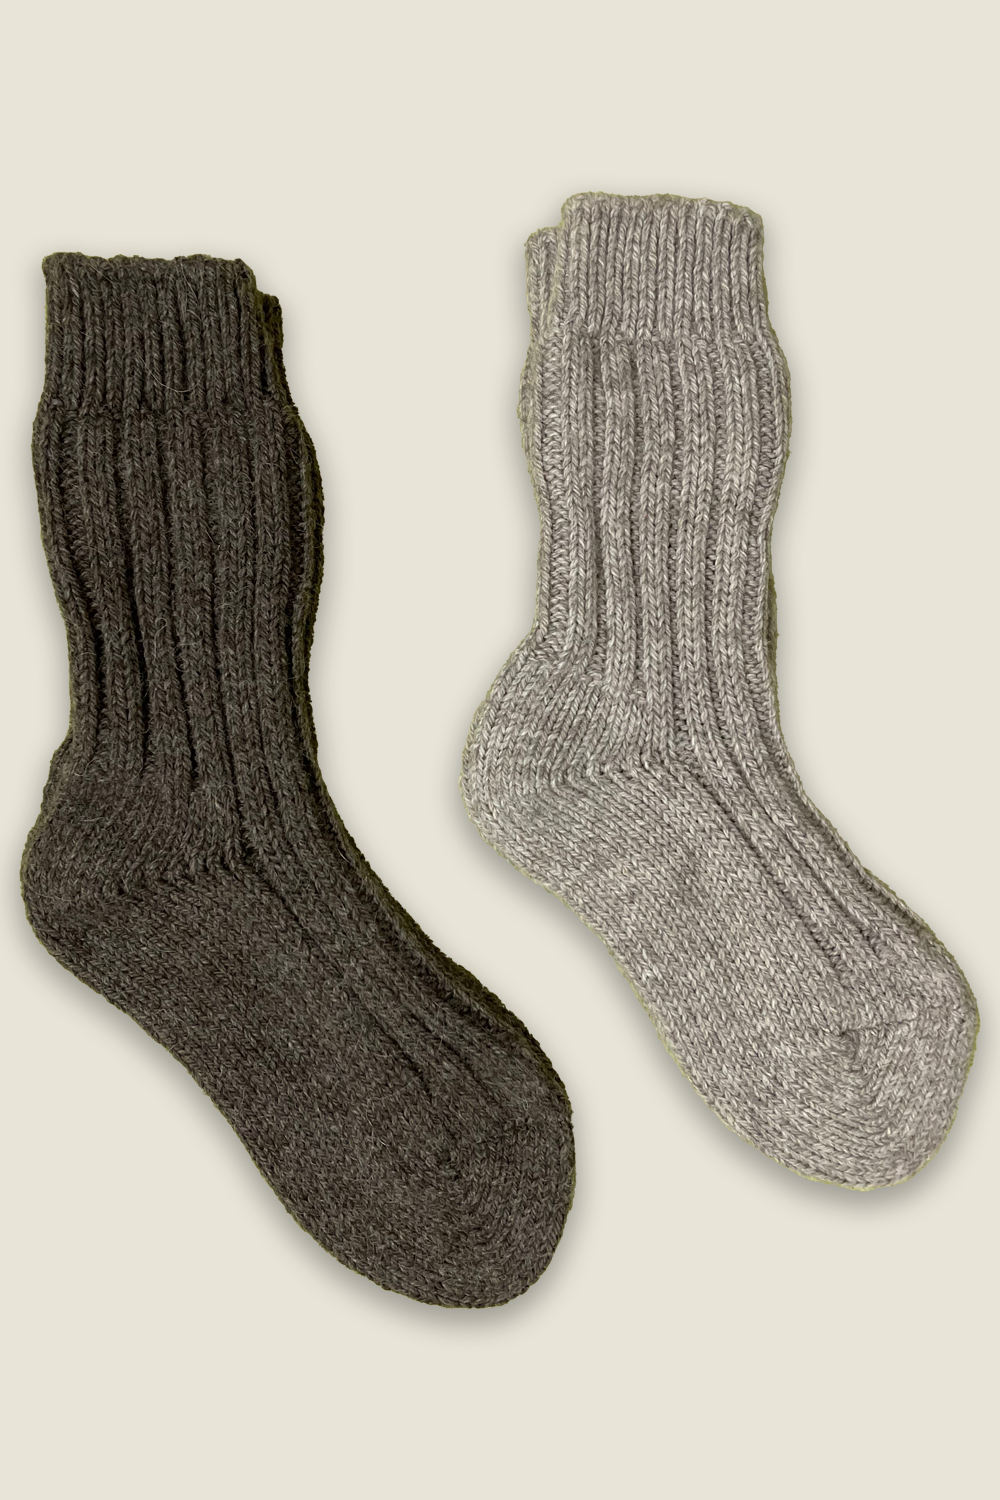 Alpaka-Socken - grau und braun - 2 Paar